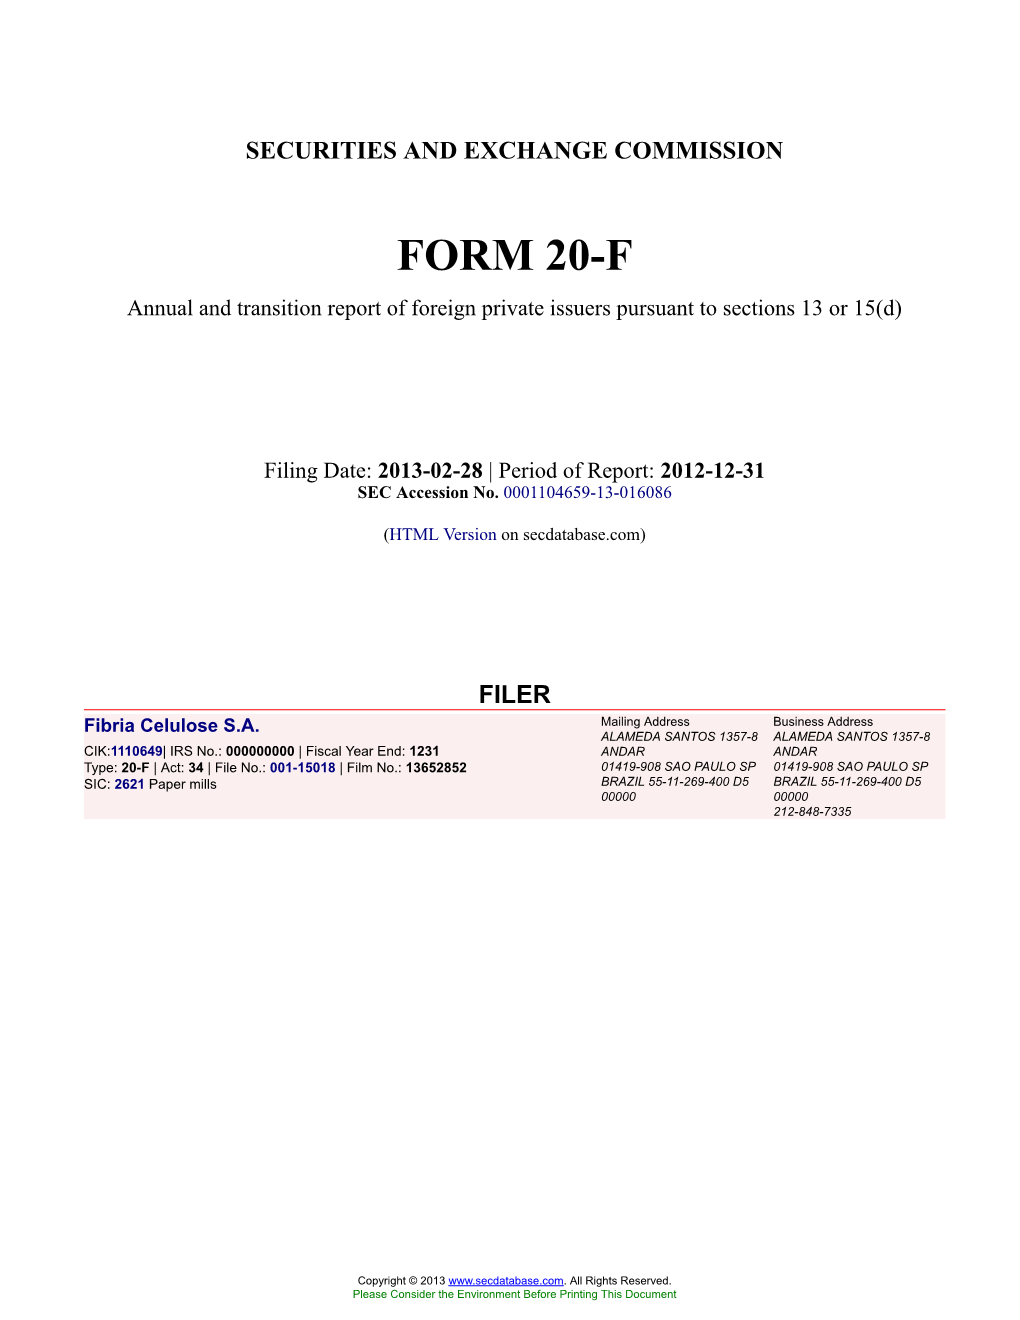 Fibria Celulose S.A. Form 20-F Filed 2013-02-28